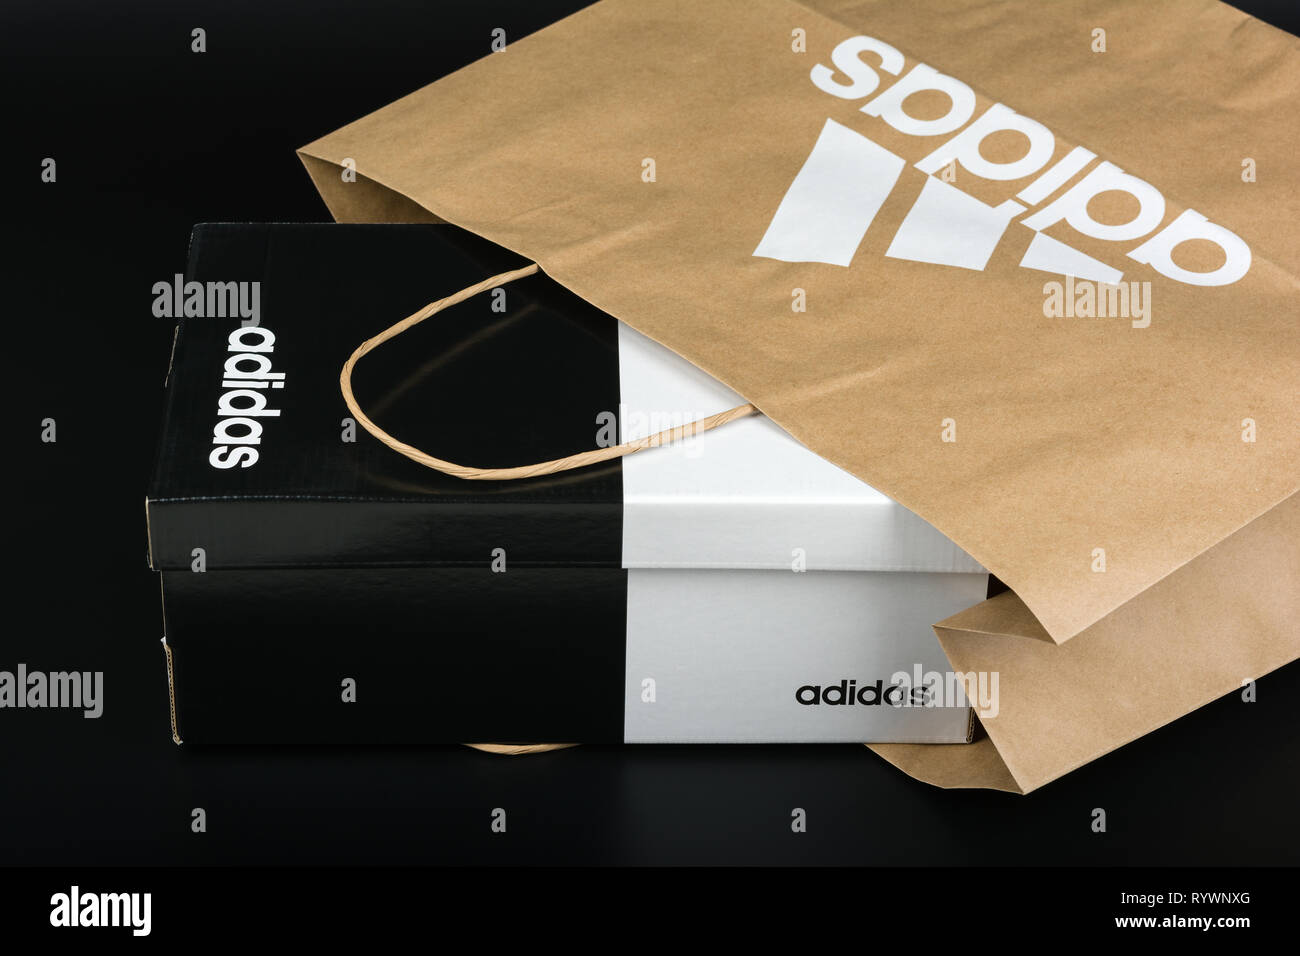 BURGAS, BULGARIA - Marzo 8, 2019: bolsa de papel con originales y el logotipo de adidas zapatos Adidas sobre fondo negro Fotografía de stock - Alamy